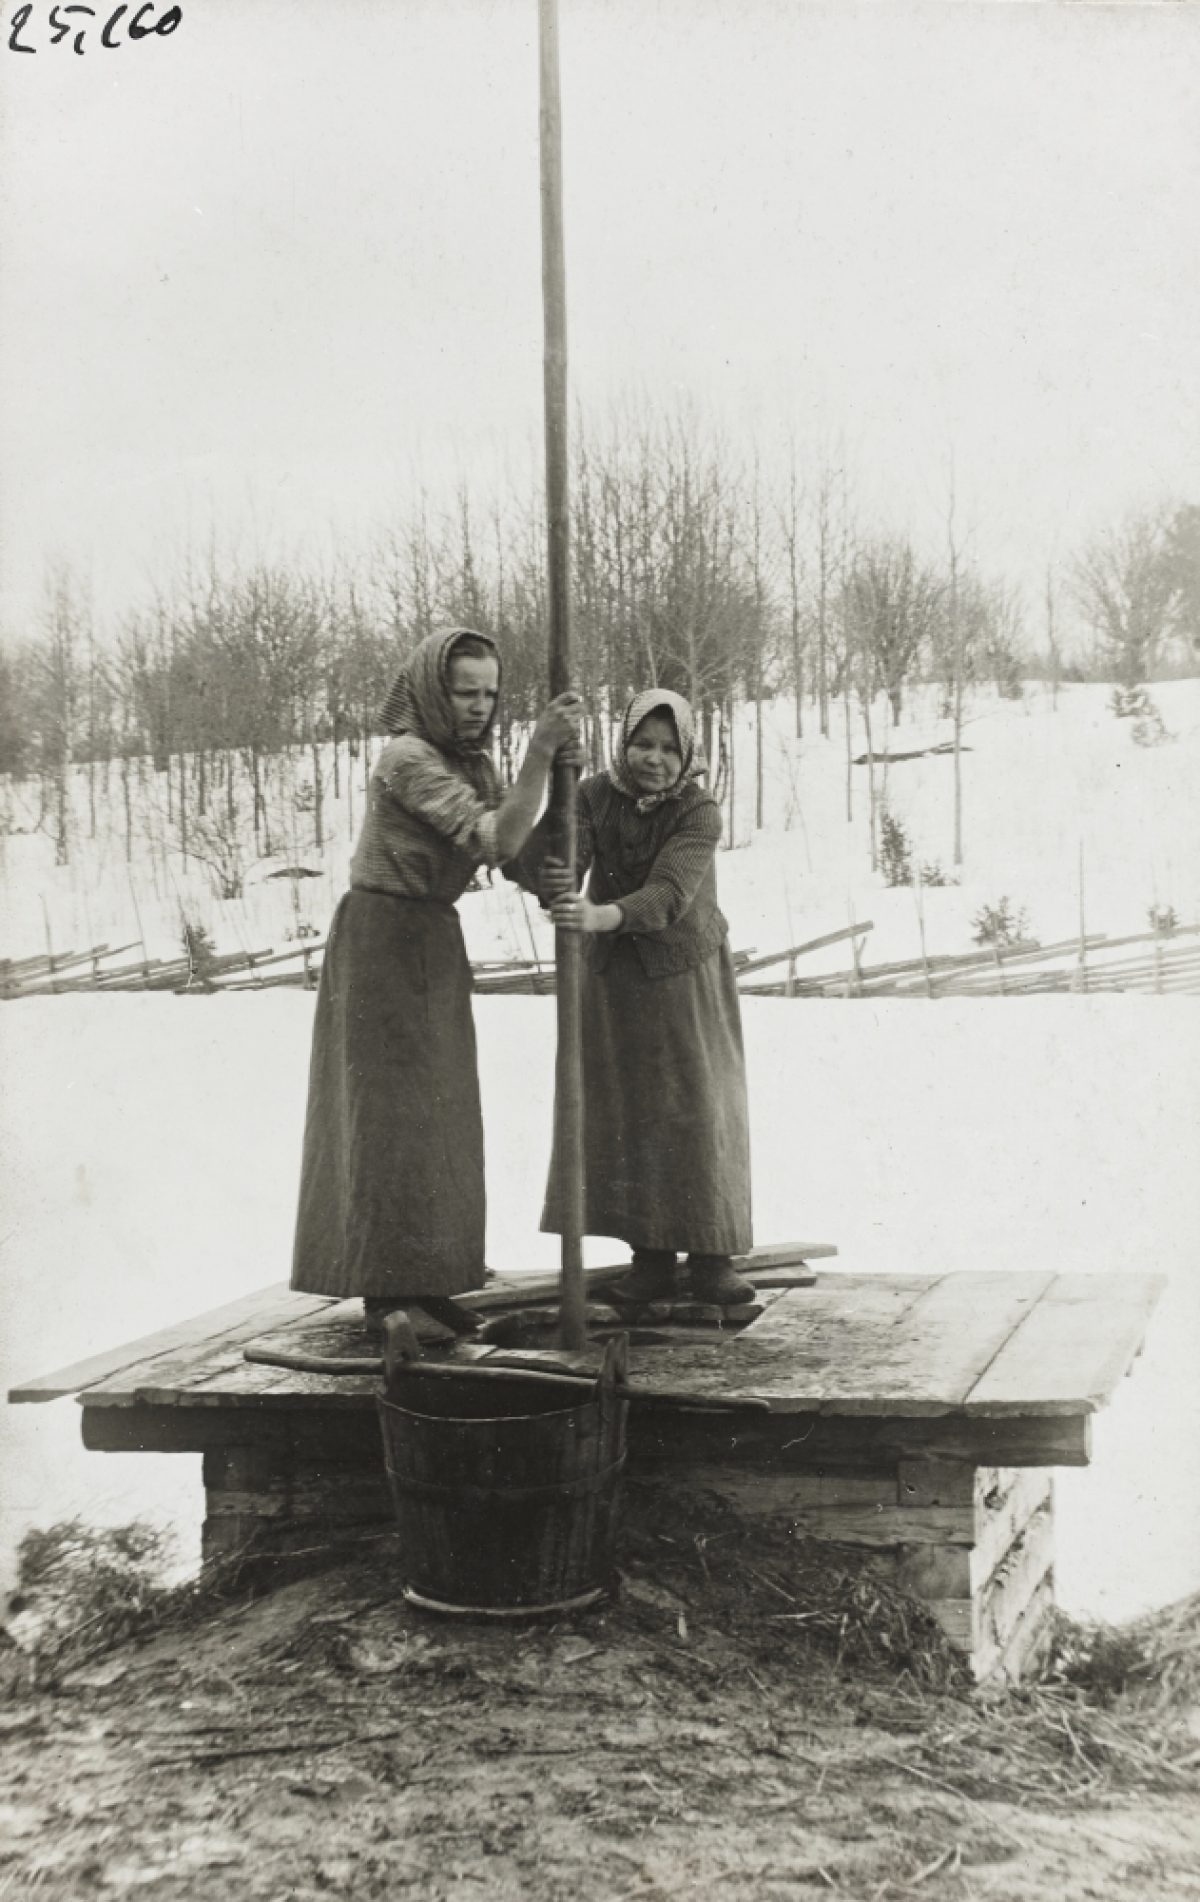 Kvinnor tar upp vatten ur en brunn med en stång i byn Airanne i Sordavala landskommun i början av 1900-talet.​ Foto: Liina Cantell / Karelska nationens samling / Museiverkets Bildsamlingar